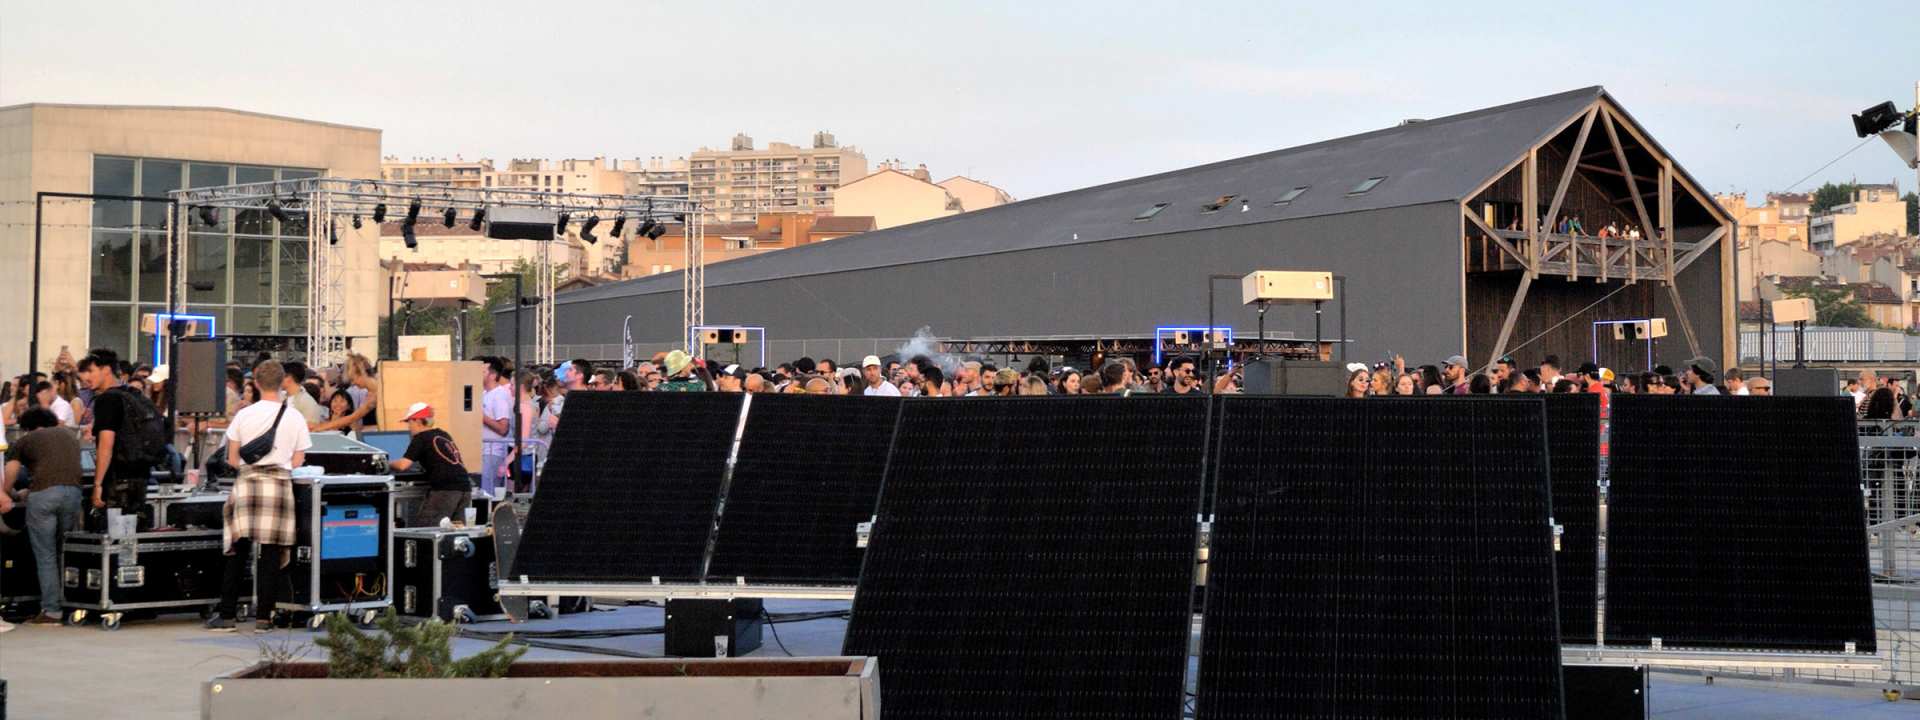 PikiP, evenement autonome, alimentation solaire, Le Bon Air festival, terrase La Friche la Belle de Mai, Marseille